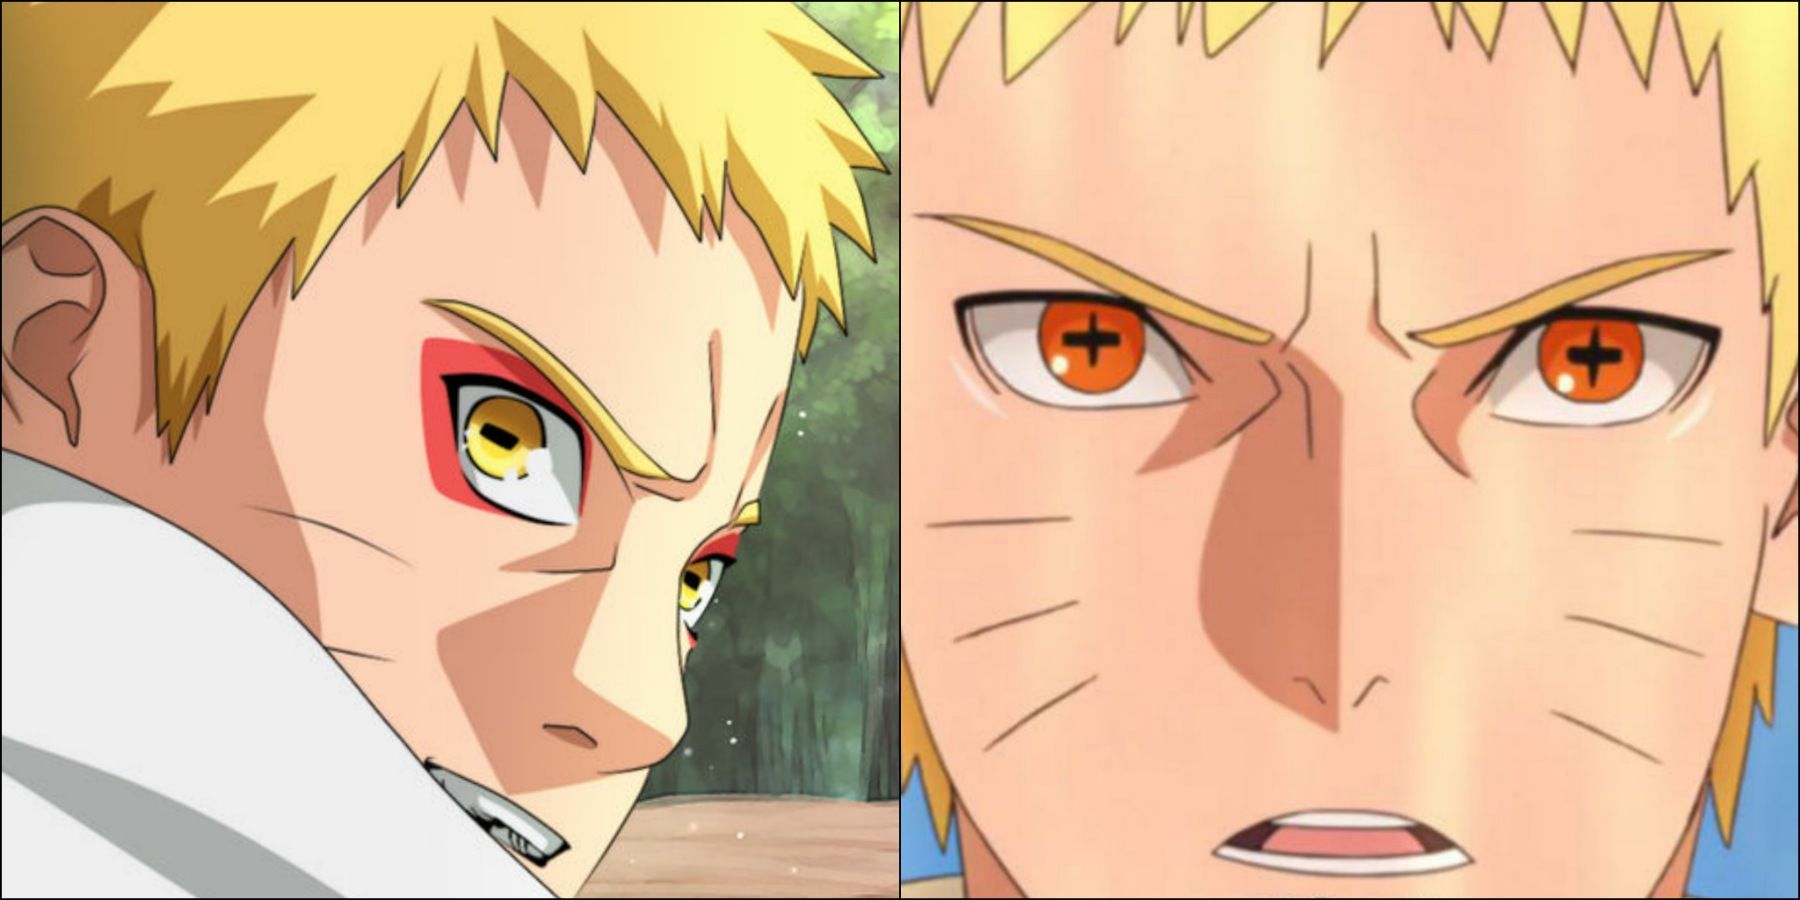 Naruto VS Boruto FULL FIGHT!! Naruto Almost Losing To Boruto's